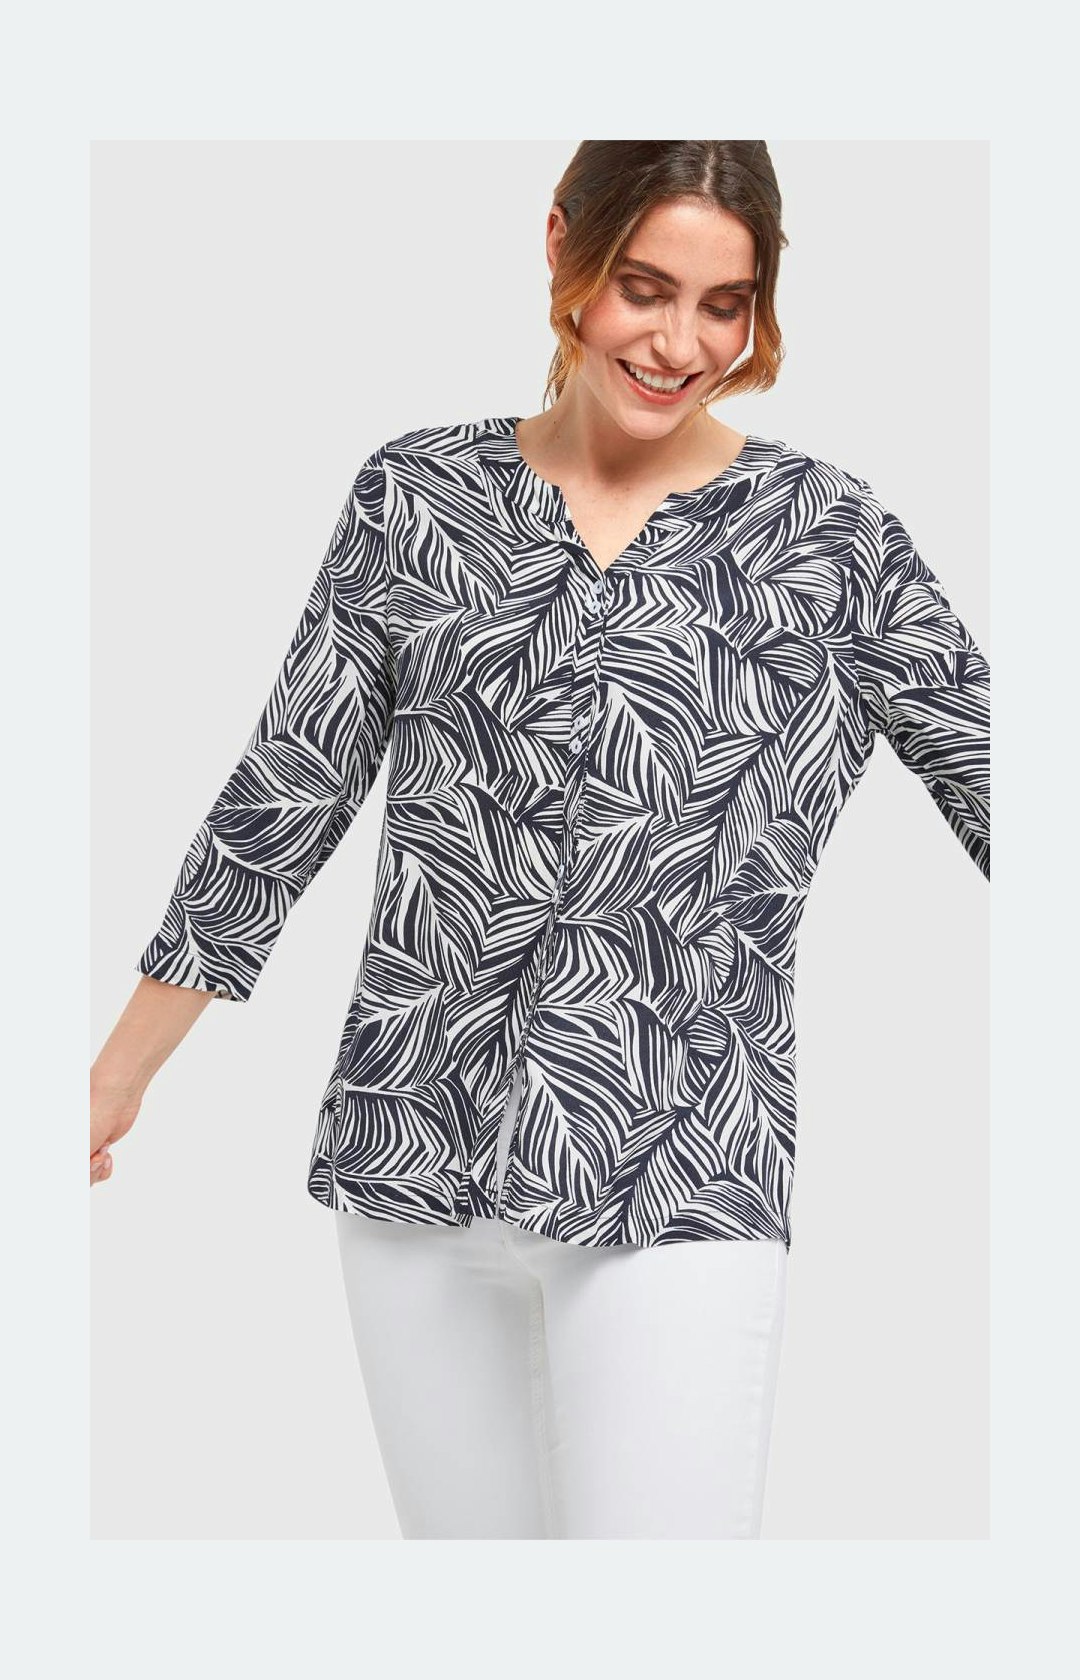 ¾-Arm Blusenshirt mit floralem Muster